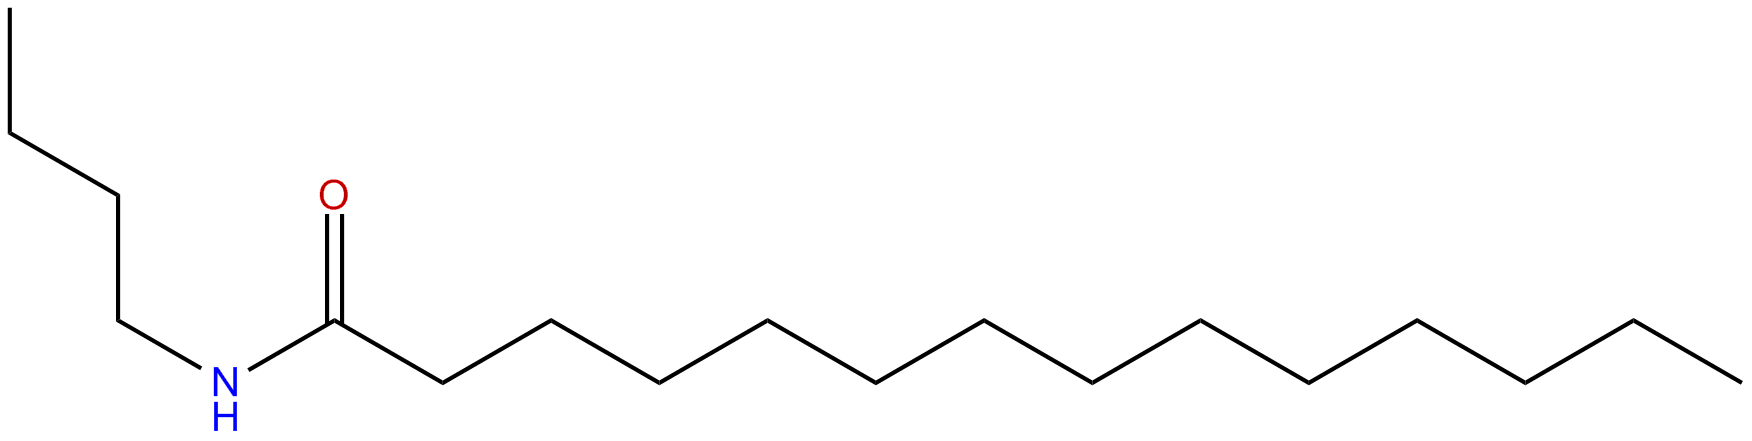 Image of N-butyltetradecanamide